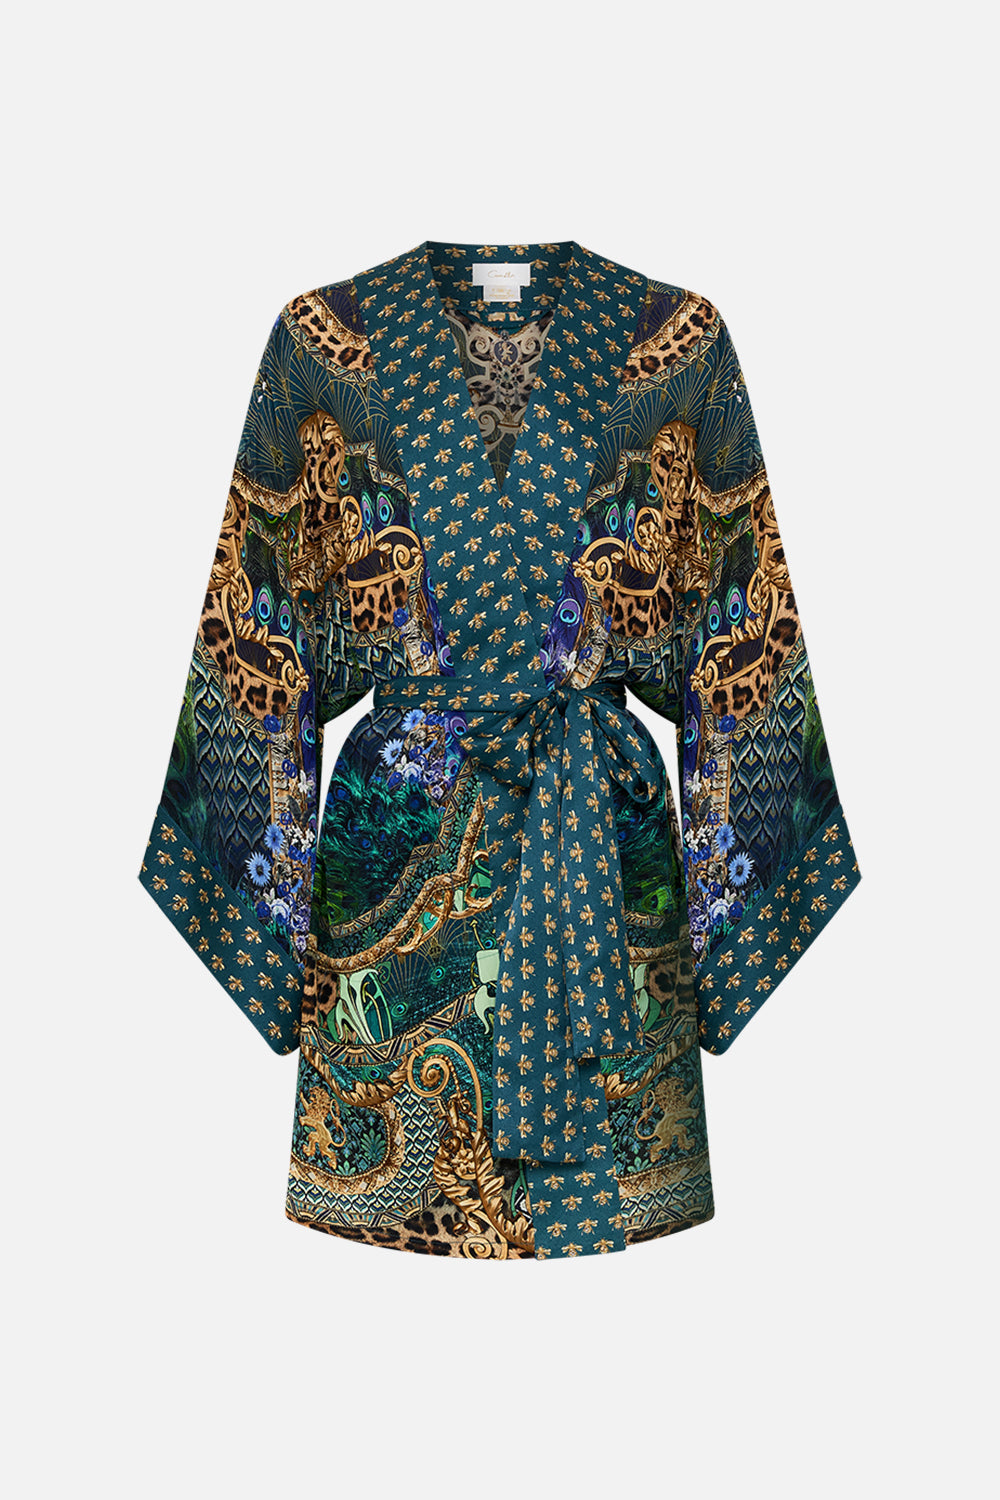 Product view of CAMILLA silk Kimono in Fan Dance print 